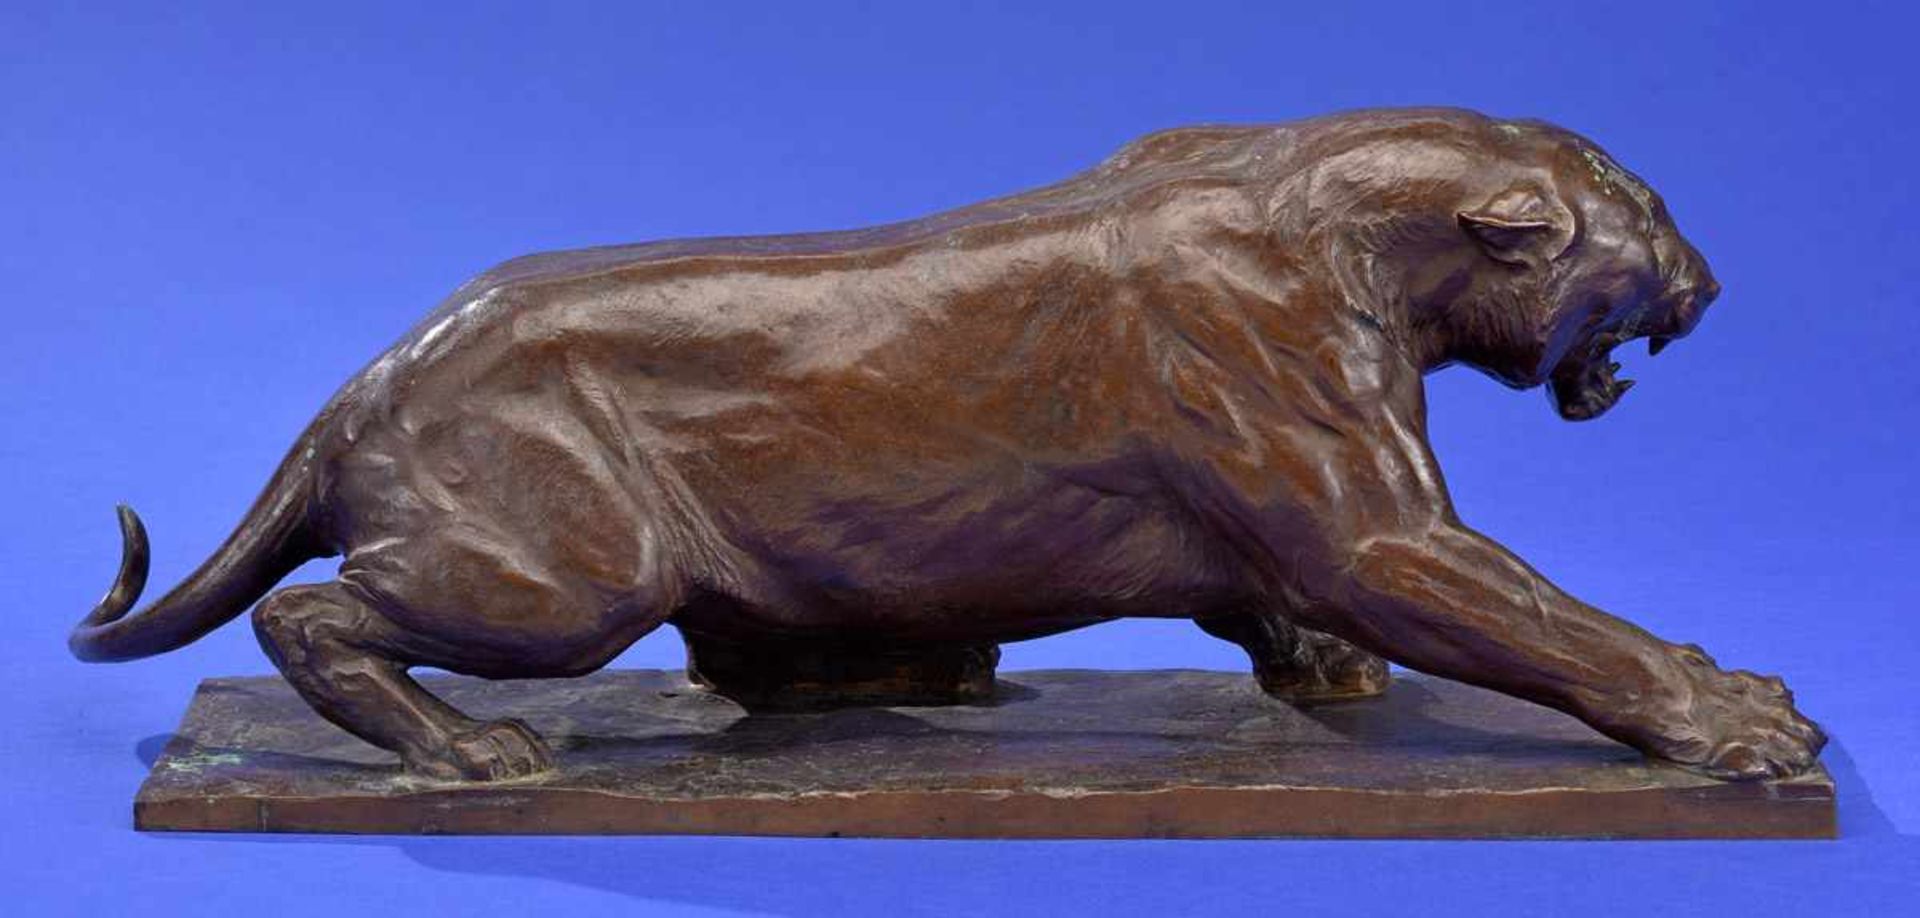 Pallenberg, Josef 1882 Köln - 1946 DüsseldorfFauchender Tiger.Bronze. Signiert. H 18 cm, L 48 cm. - Bild 2 aus 3